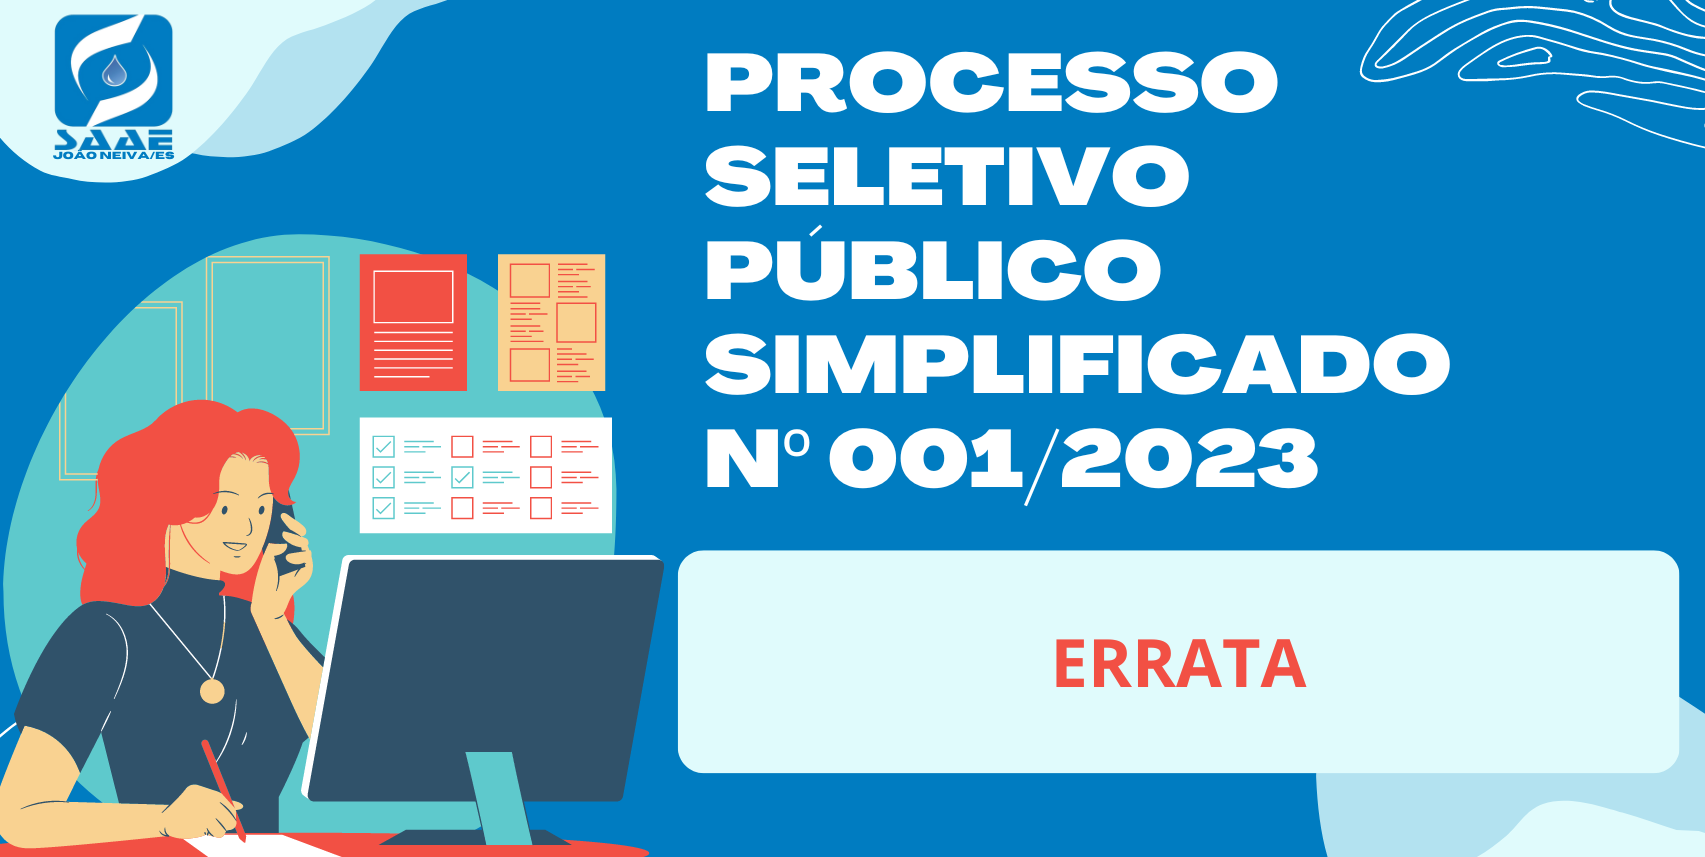 ERRATA - EDITAL DO PROCESSO SELETIVO PÚBLICO SIMPLIFICADO Nº 001/2023